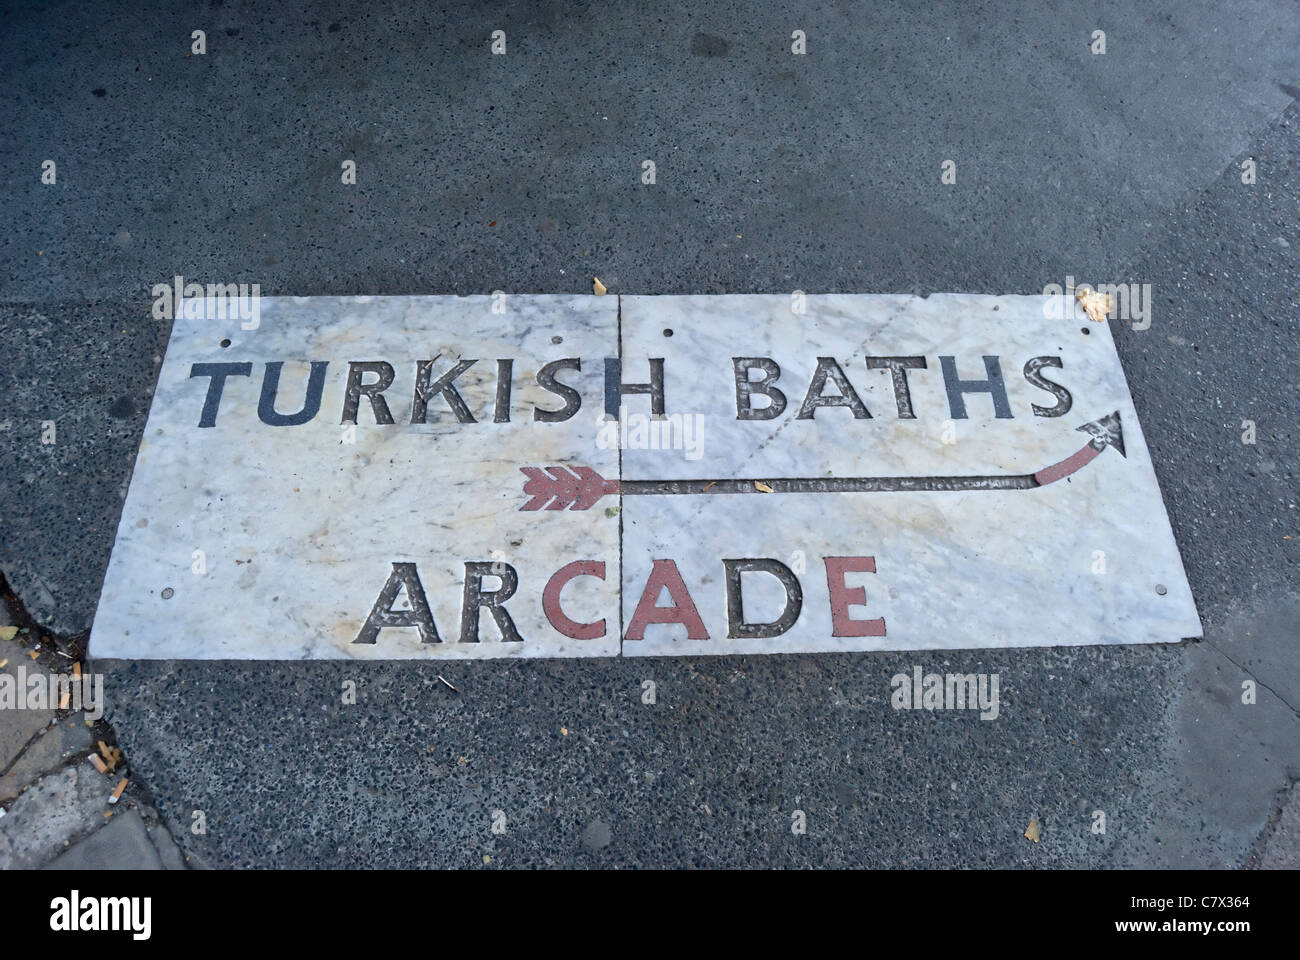 Pflaster-Zeichen für türkische Bäder Arcade, Russell Square, London, england Stockfoto